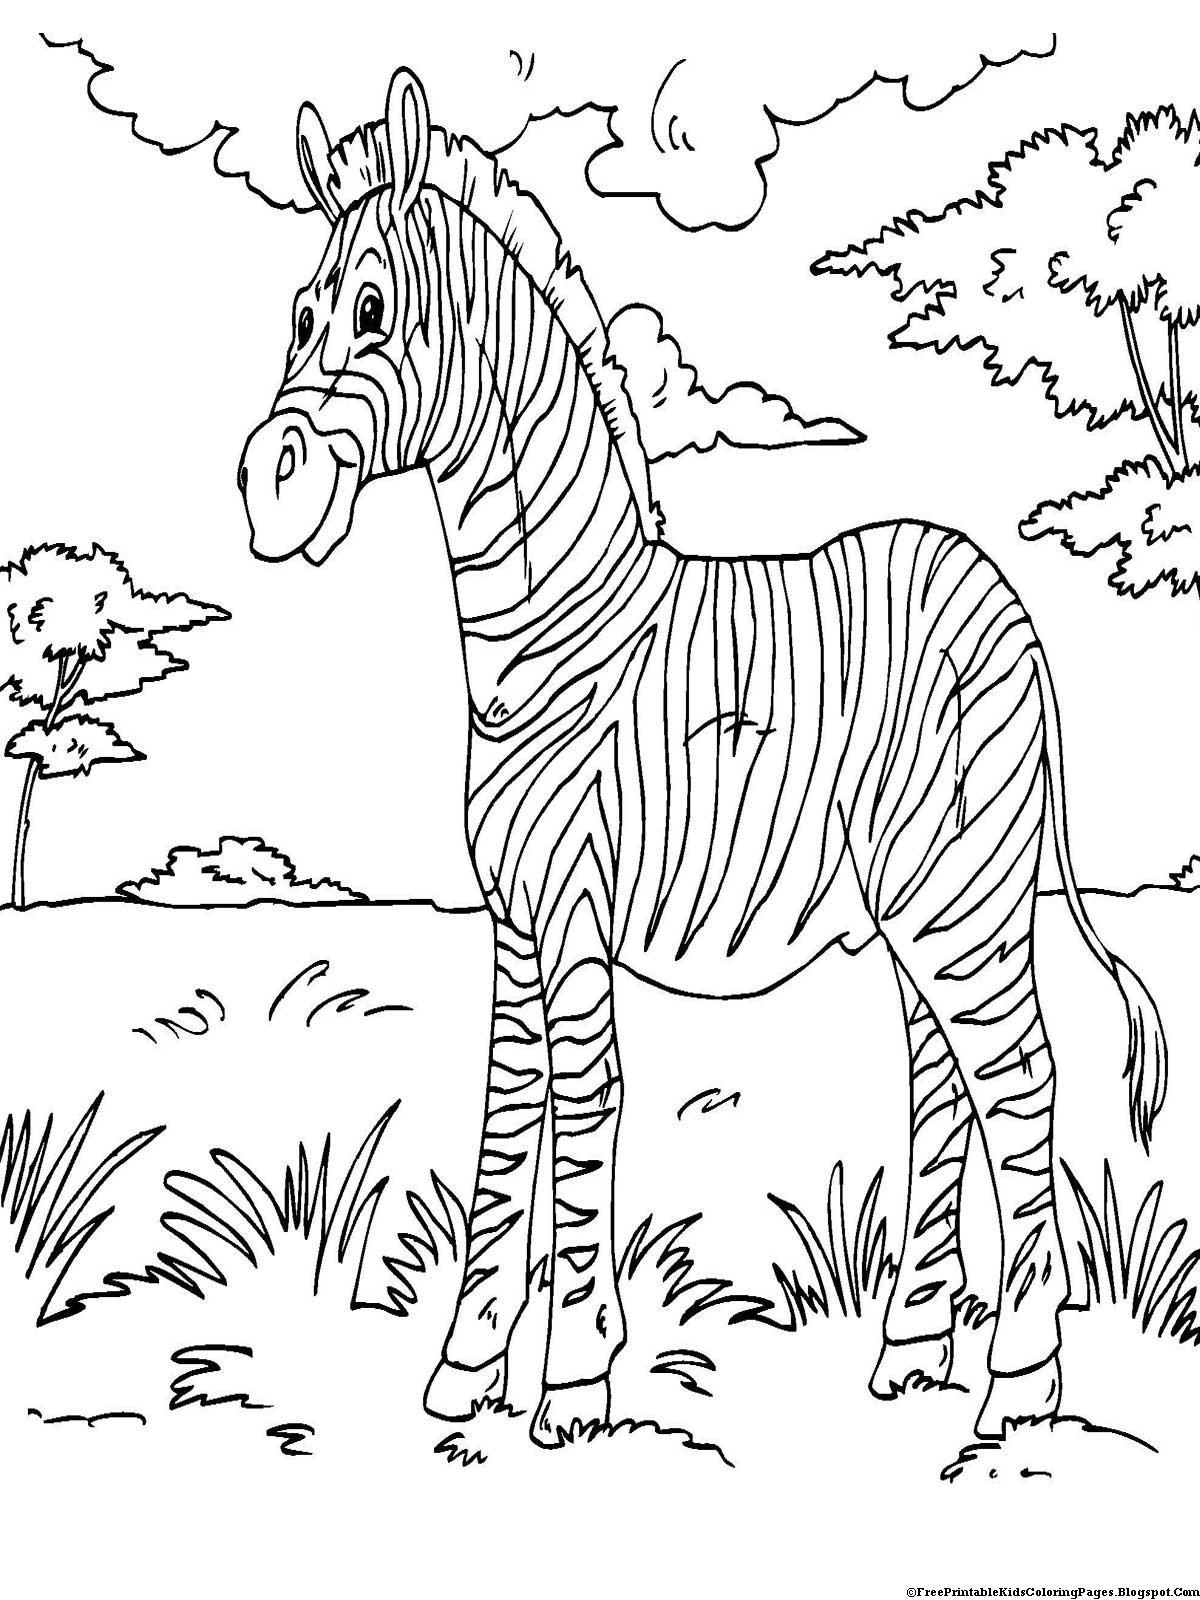 Printable Coloring Books For Kids
 Zebra Coloring Pages Free Printable Kids Coloring Pages